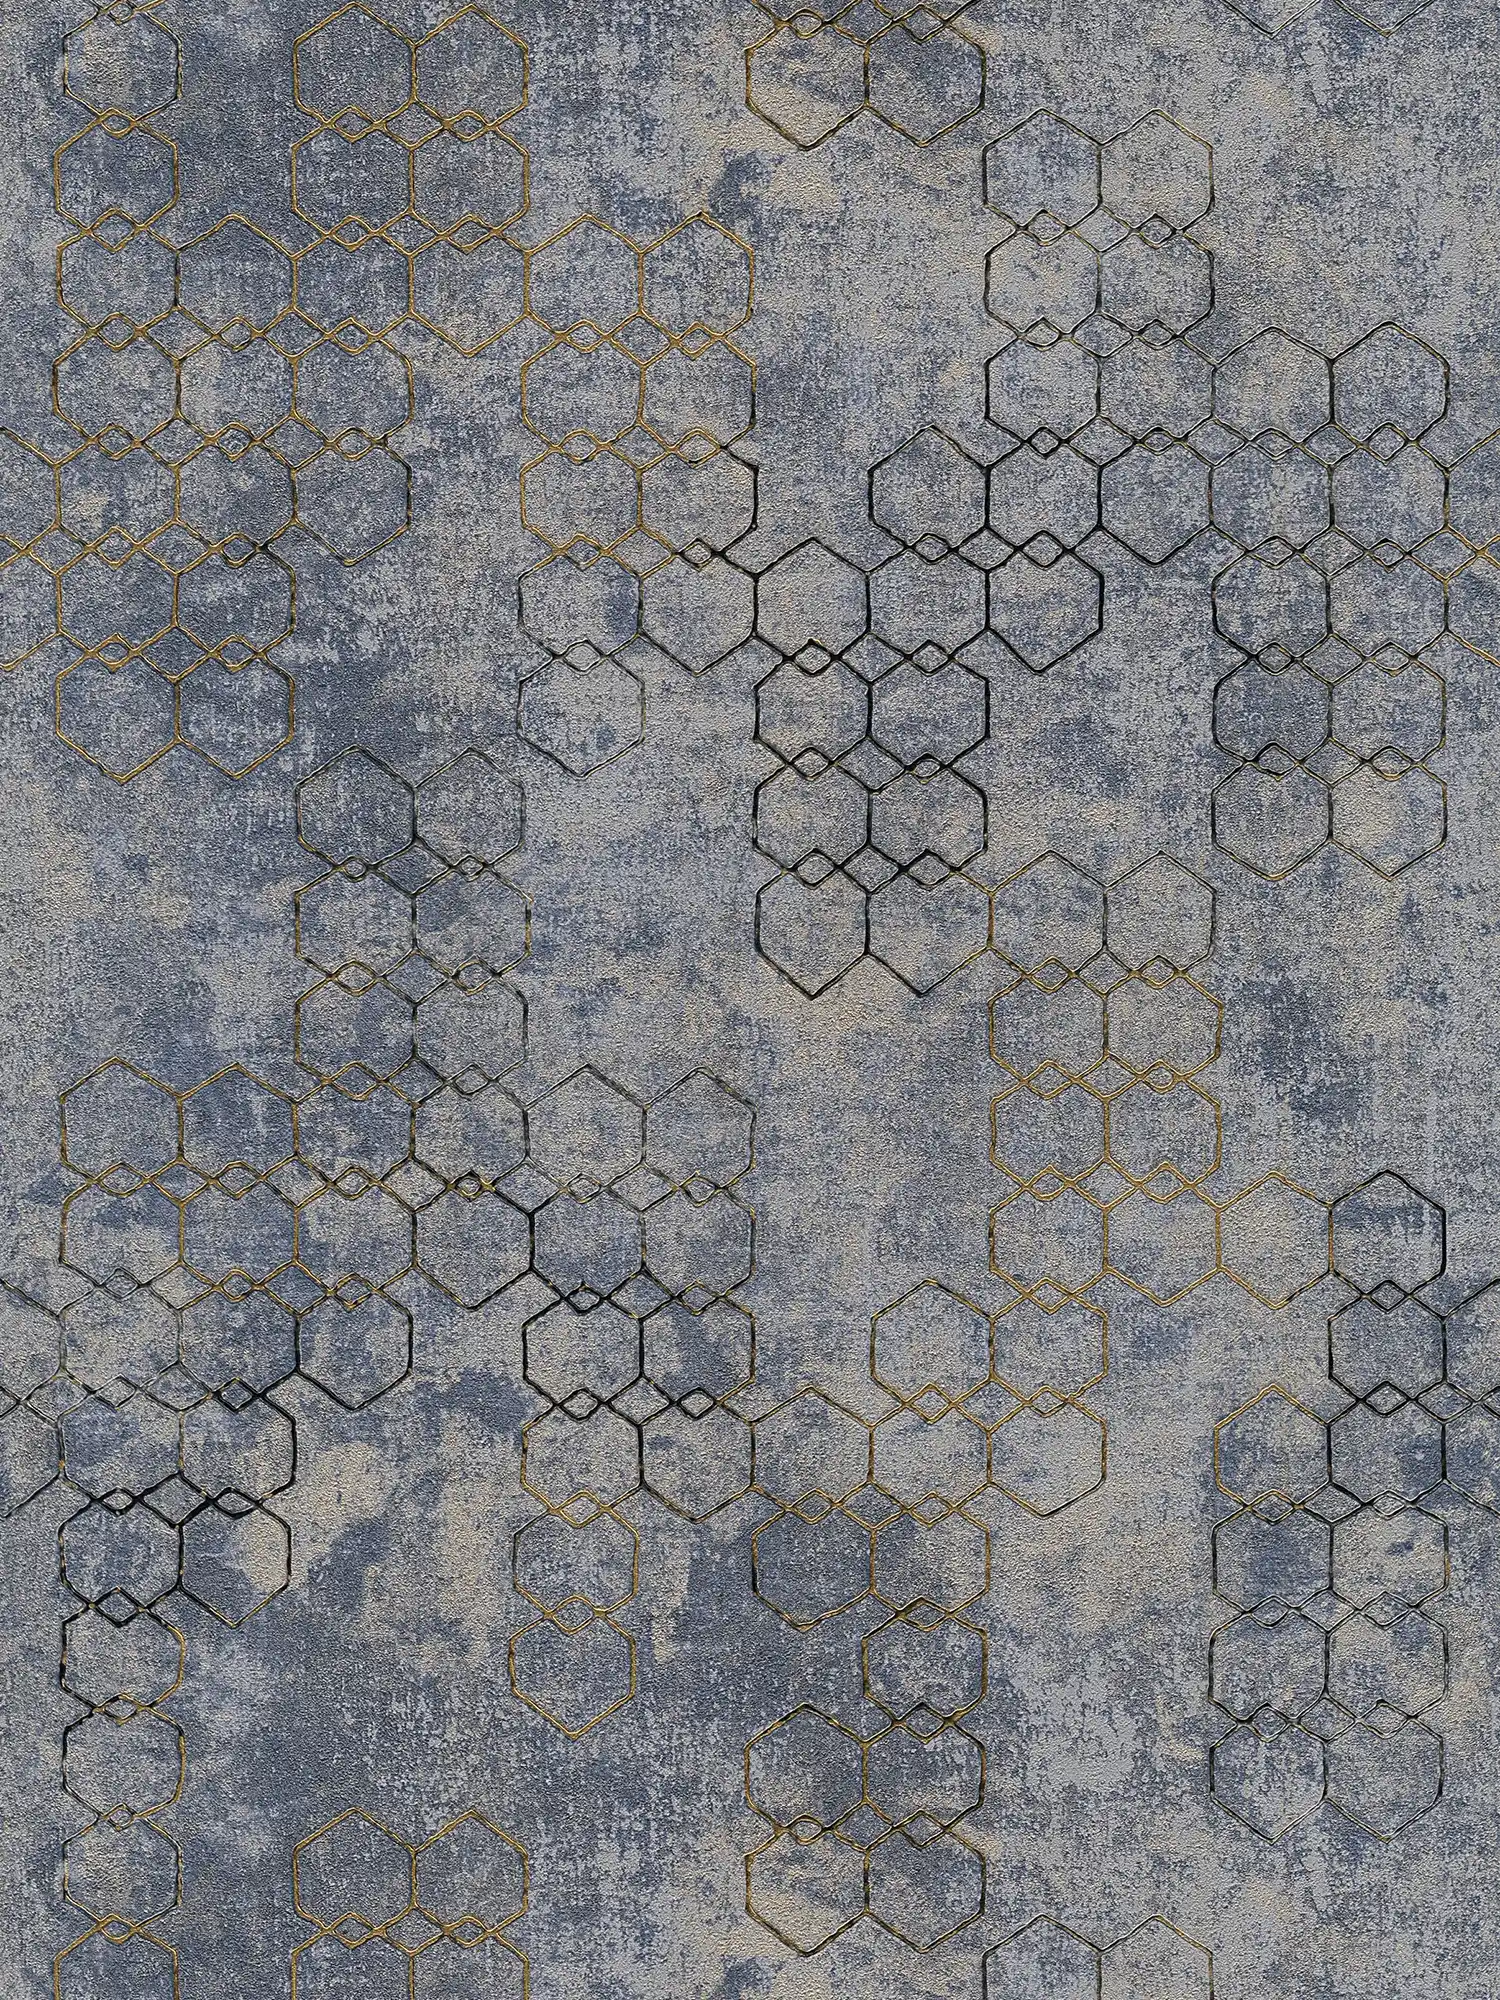 behang modern design goud & beton effect - blauw, goud, grijs
